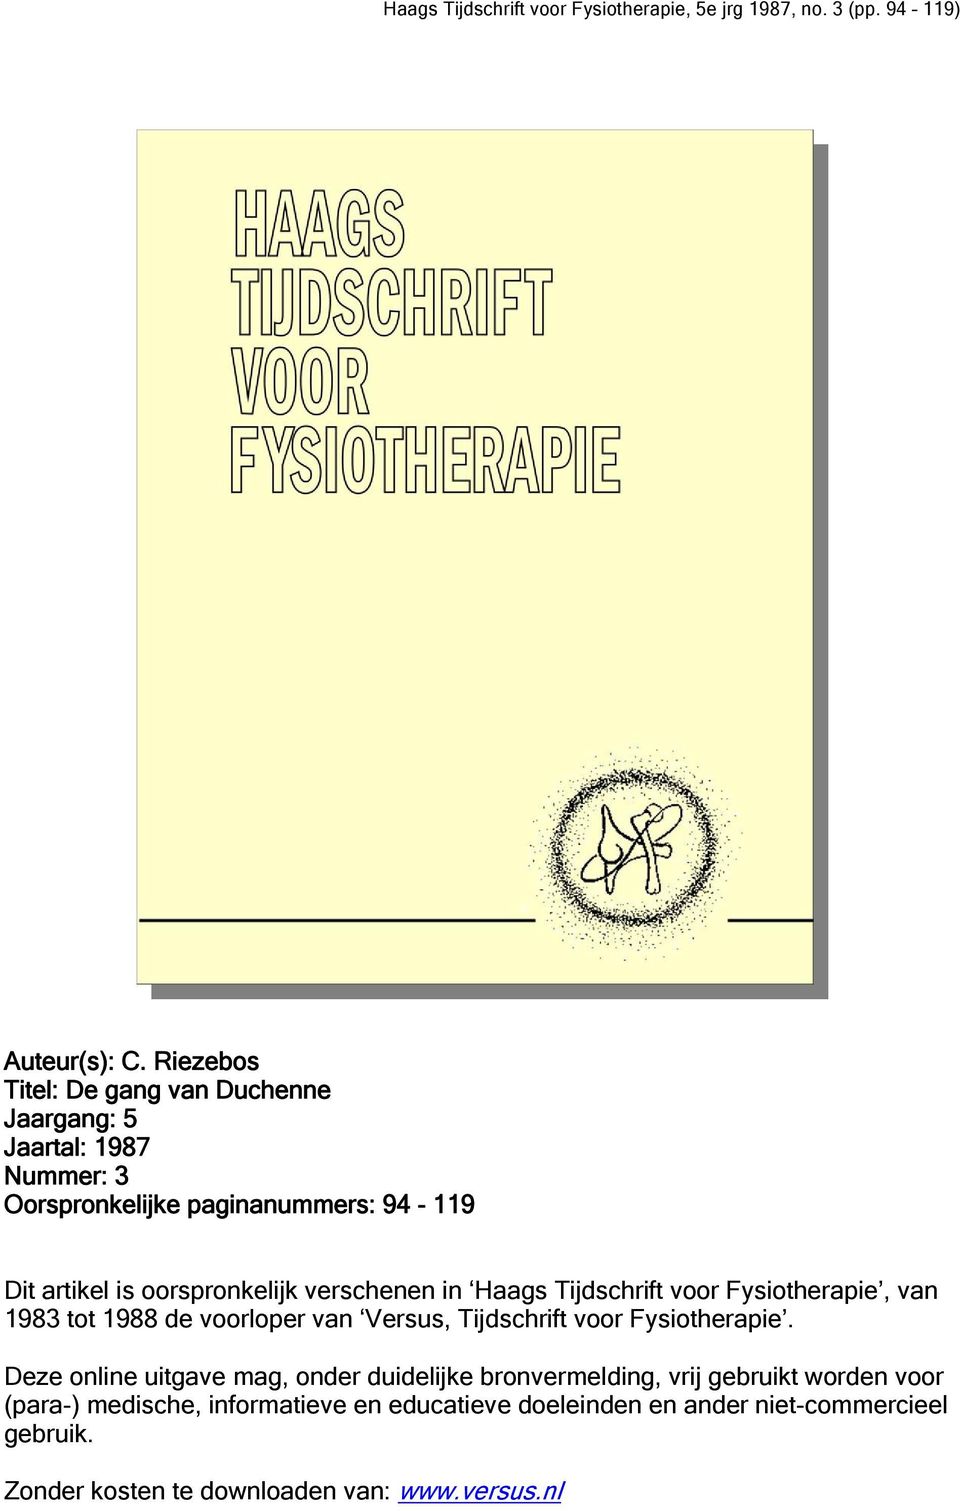 oorspronkelijk verschenen in Haags Tijdschrift voor Fysiotherapie, van 1983 tot 1988 de voorloper van Versus, Tijdschrift